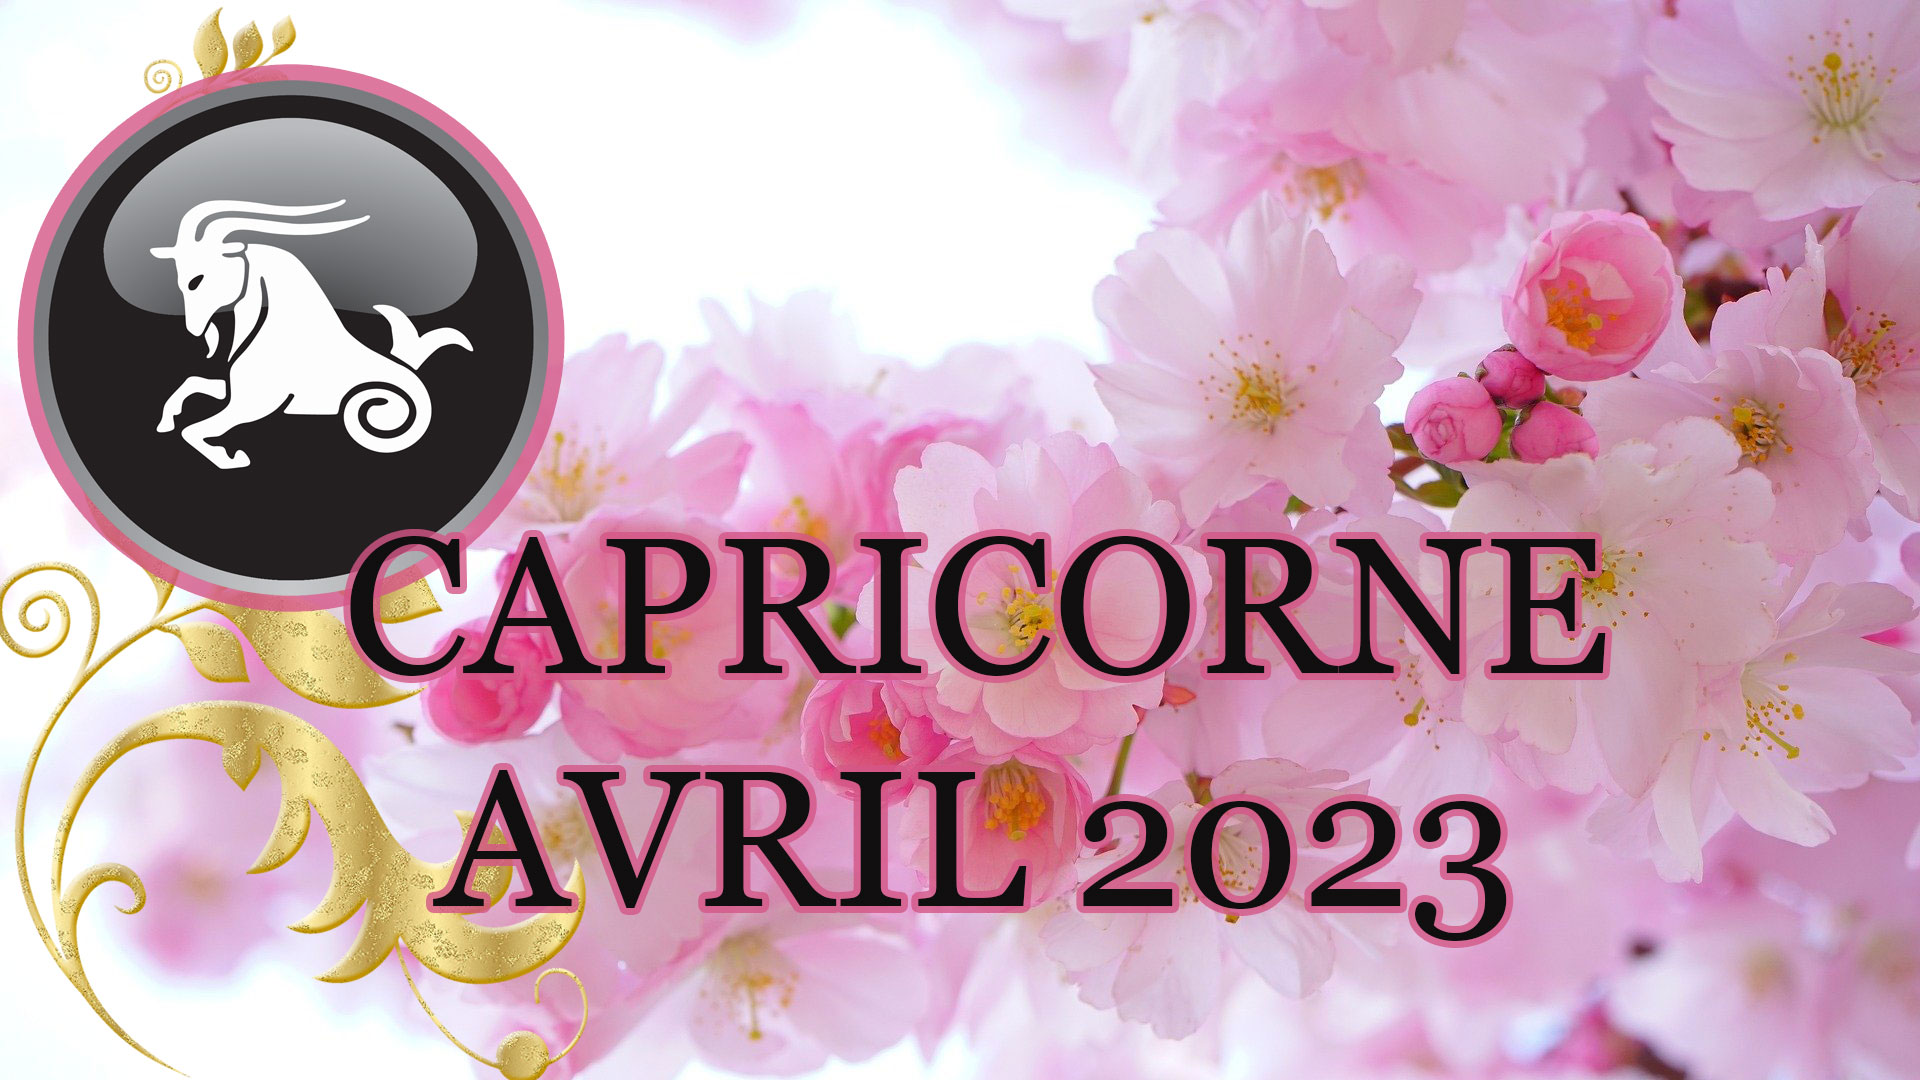 capricorne avril 2023